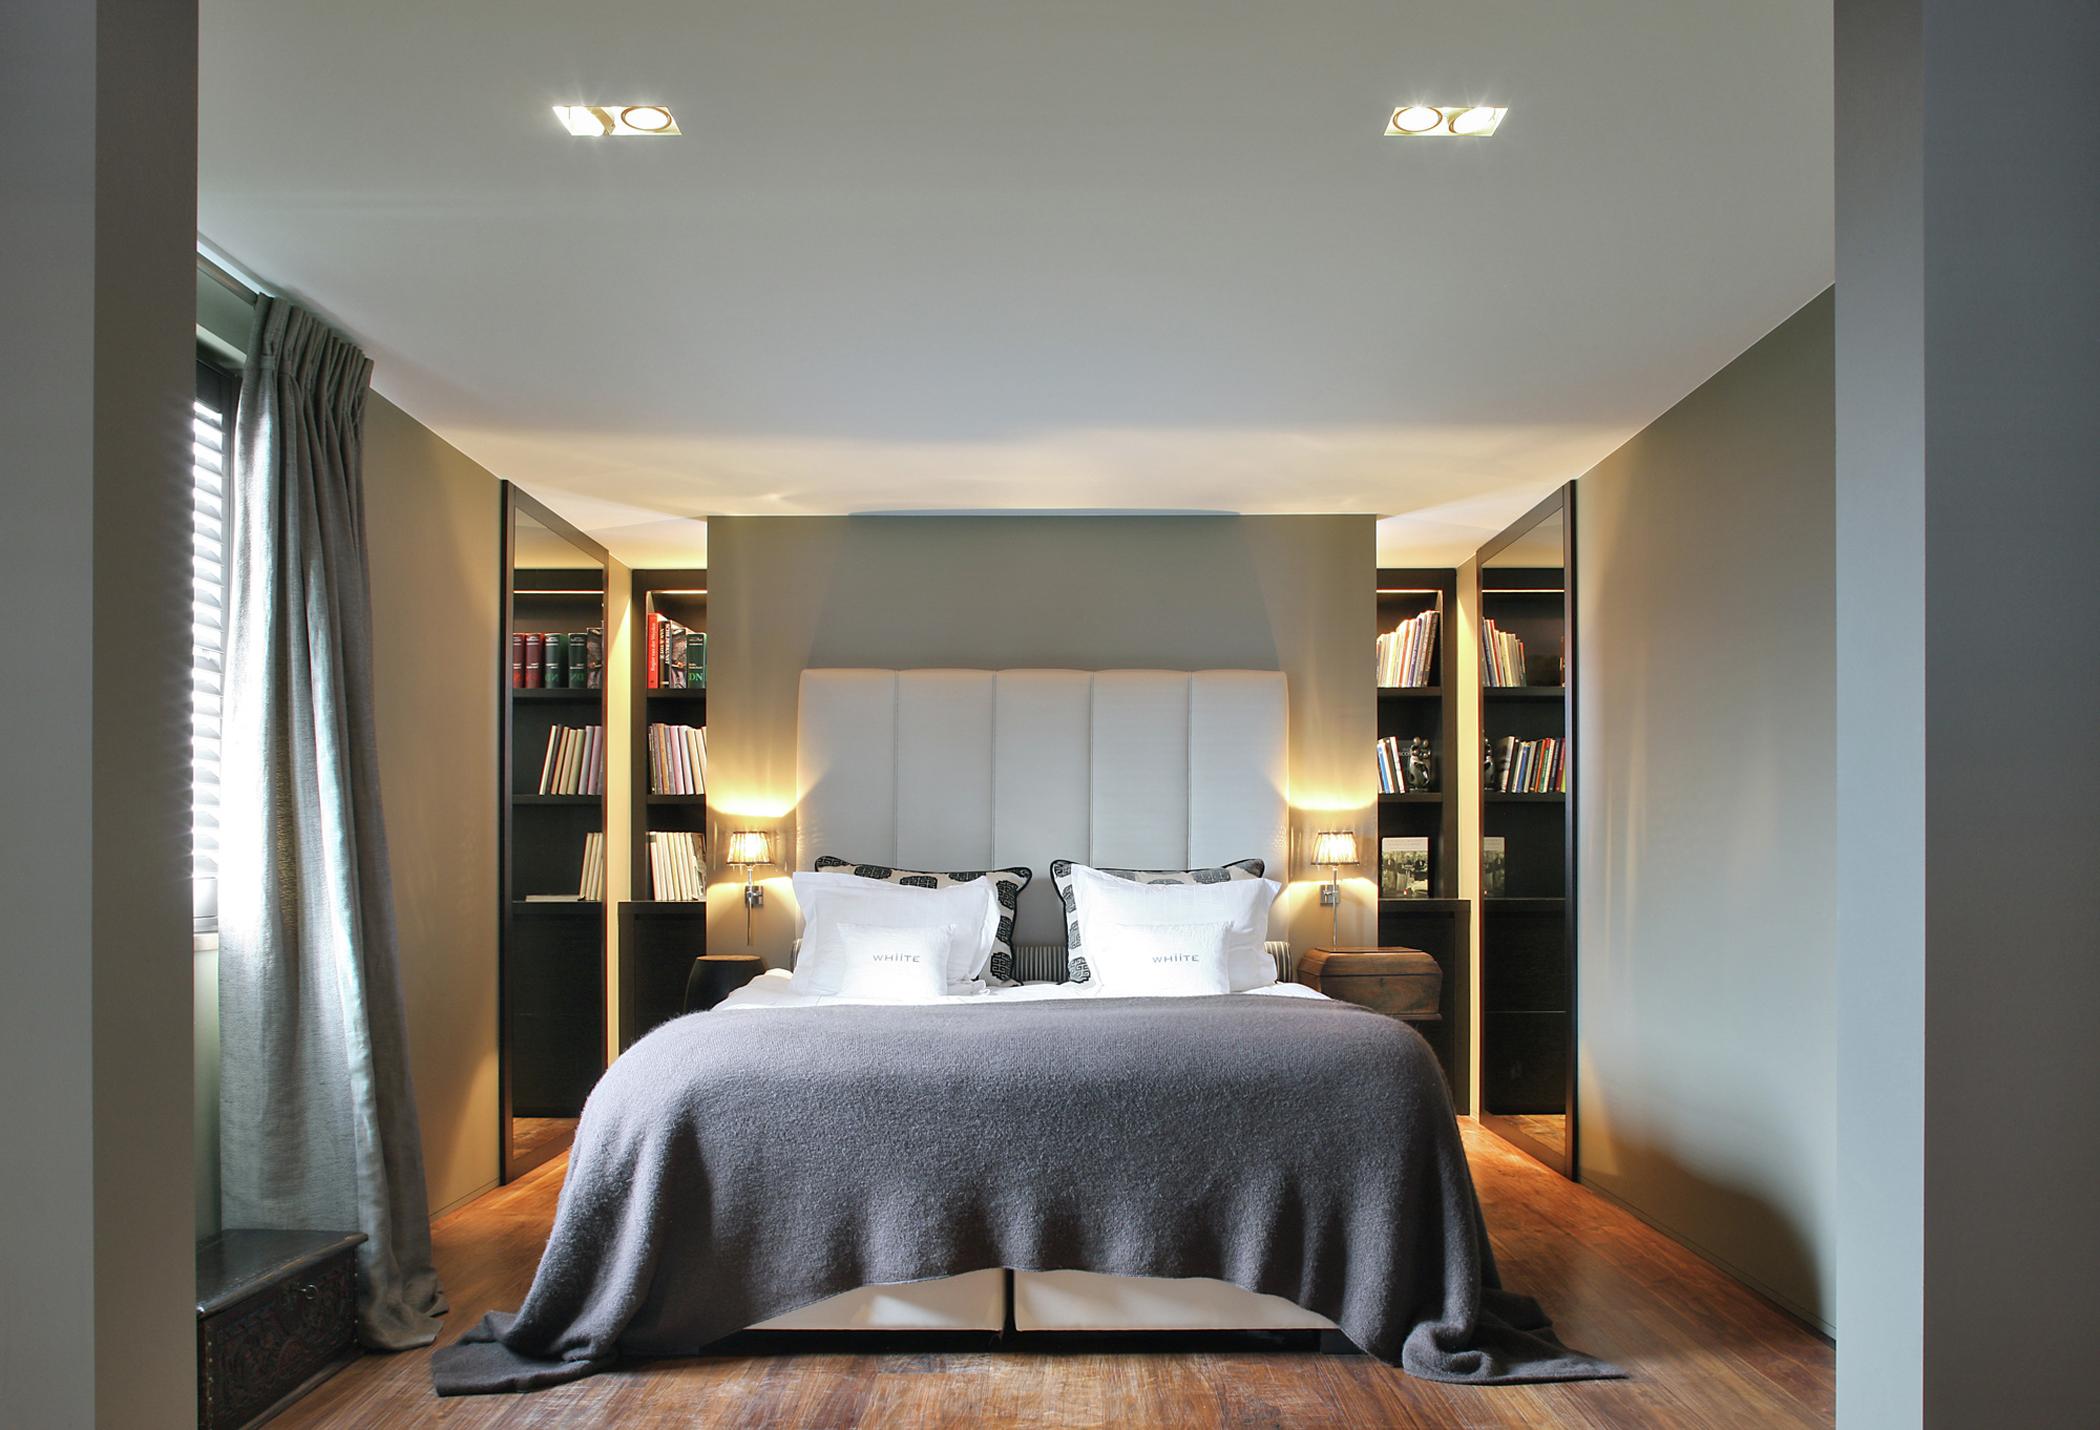 Schlafzimmer in Grautönen gestalten #begehbarerkleiderschrank #schlafzimmerbeleuchtung #zimmergestaltung ©Modular Lighting Instruments